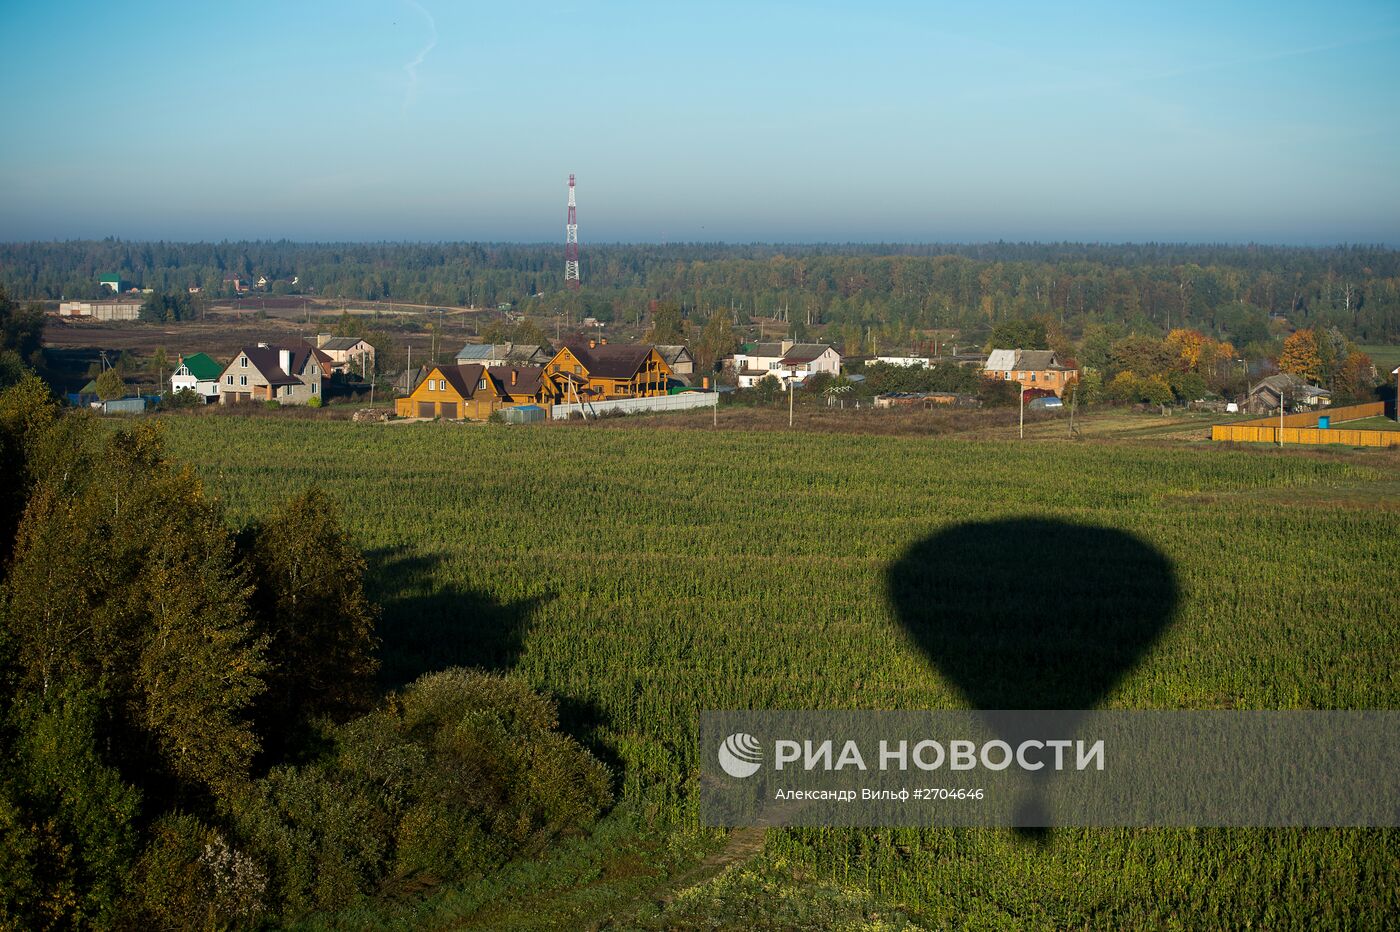 Занятия воздухоплаванием в Московской области